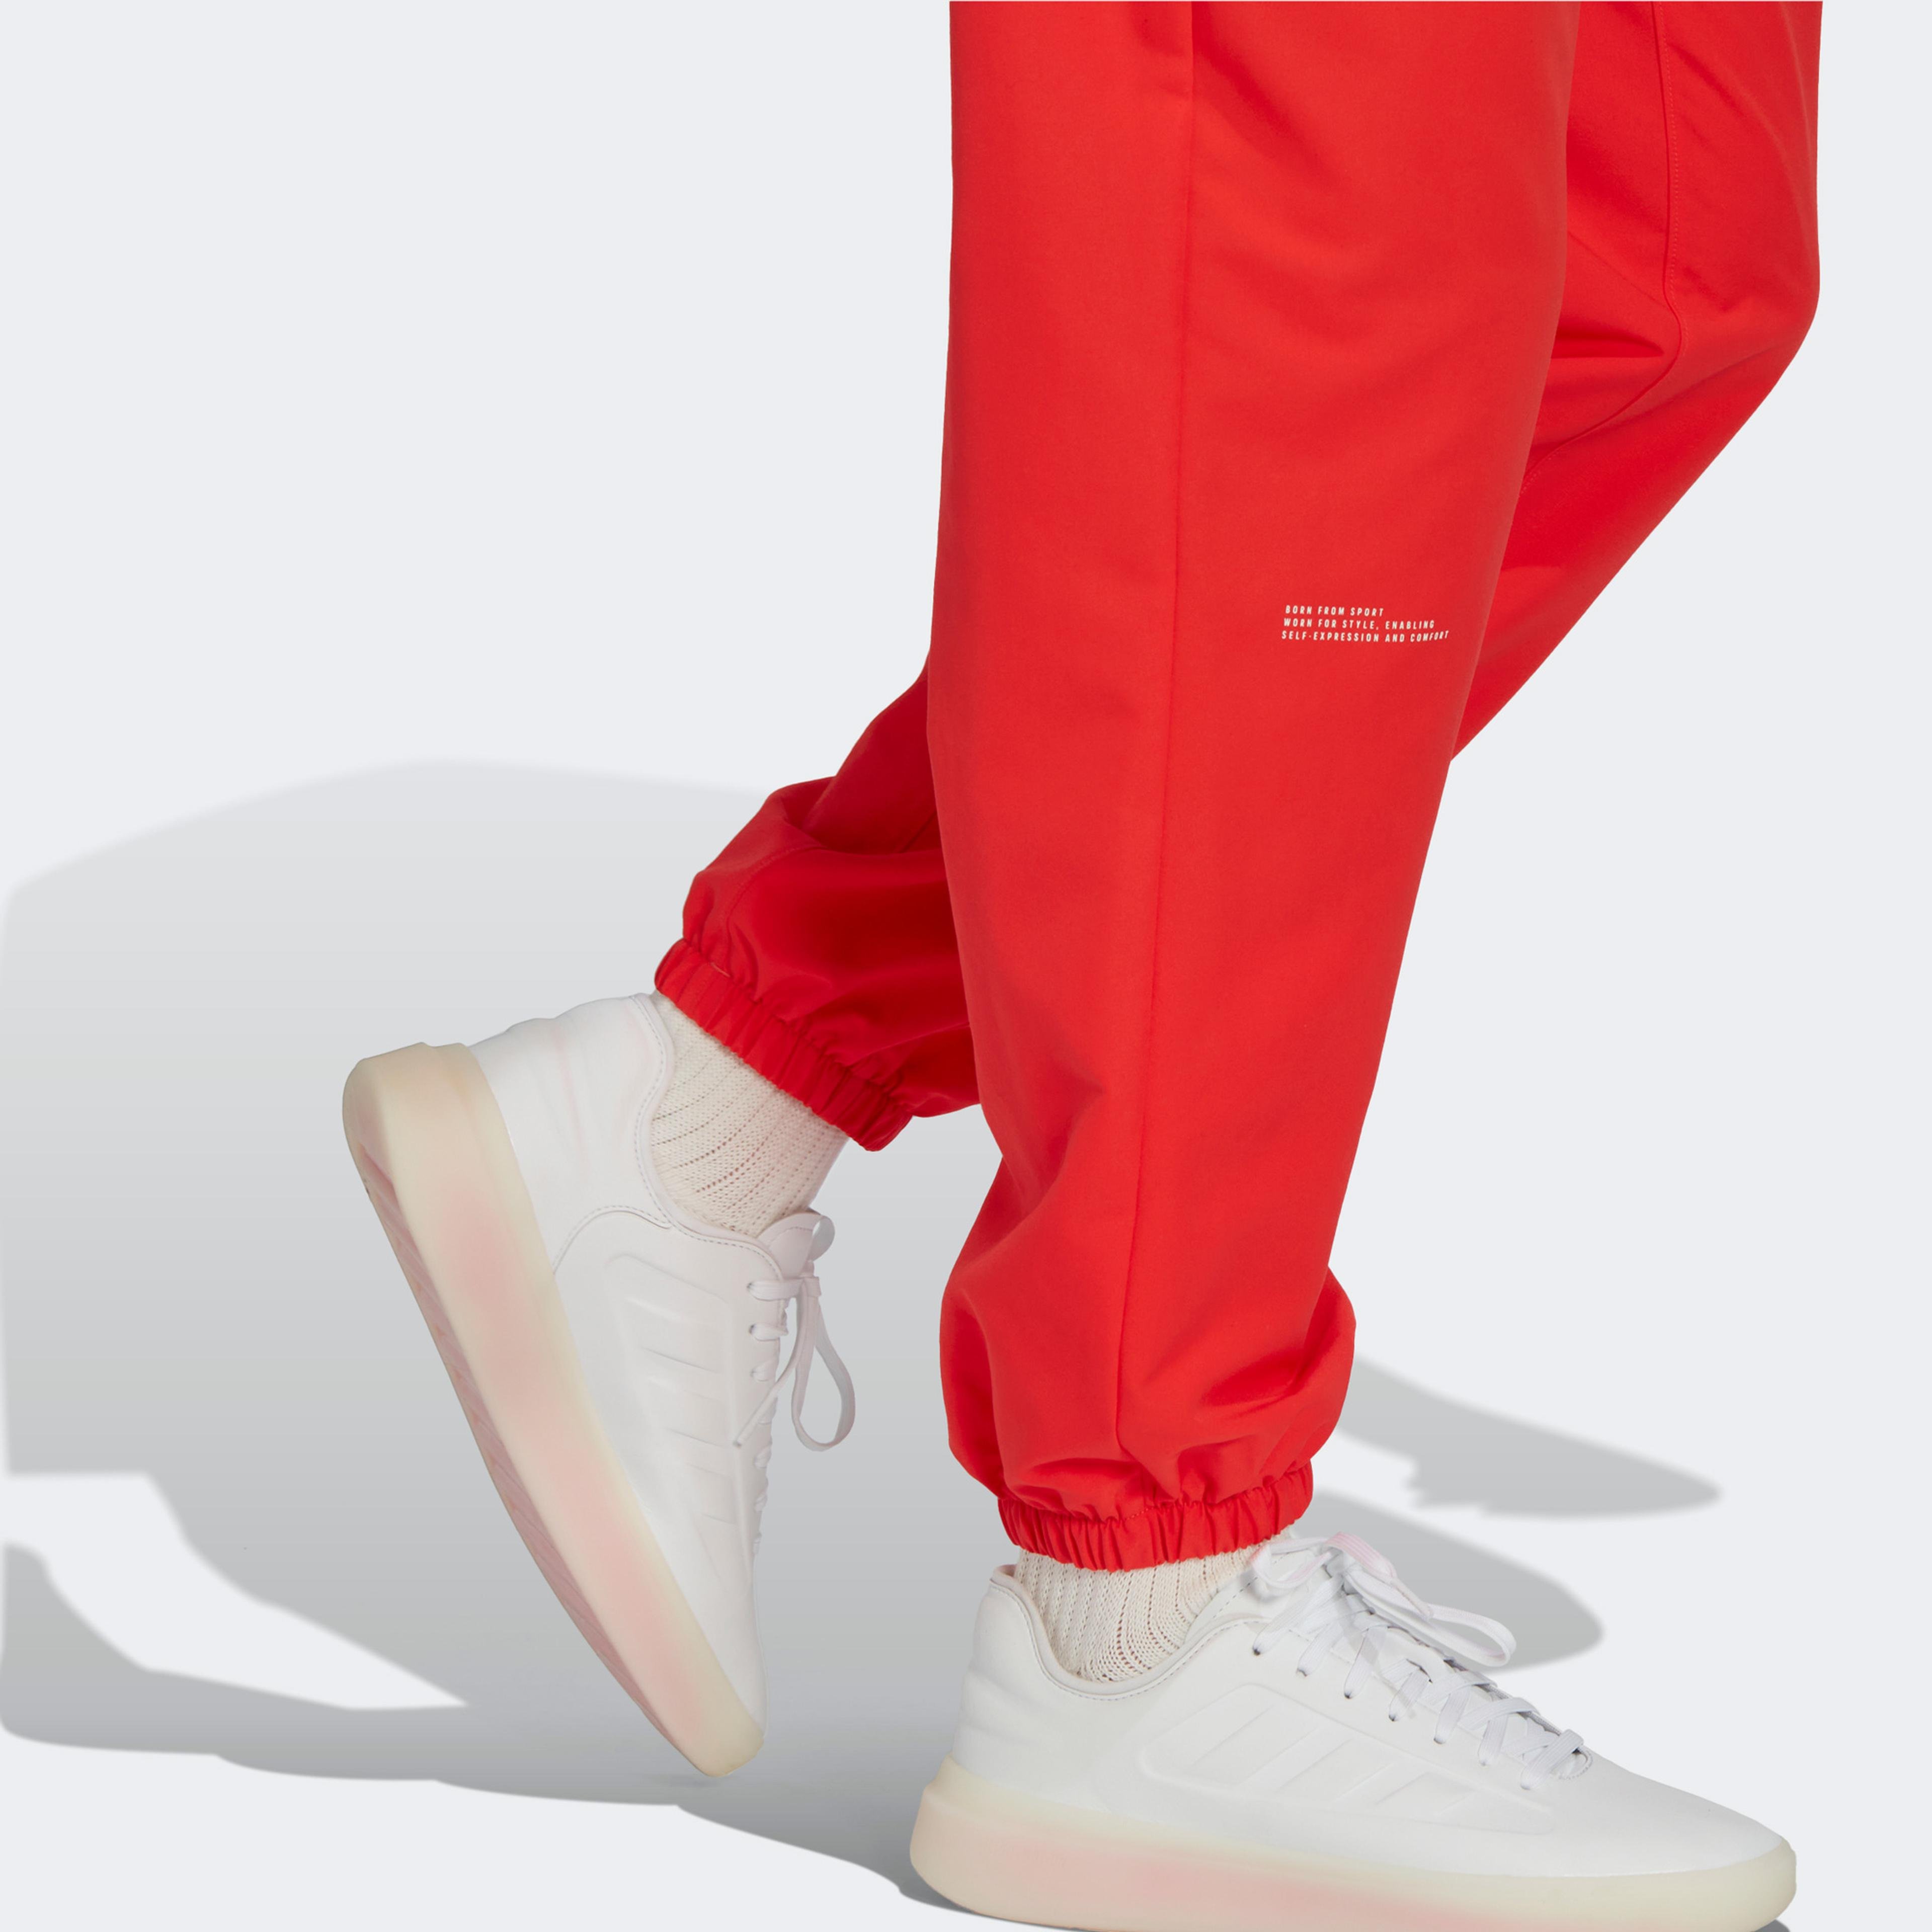 adidas Woven Erkek Kırmızı Eşofman Altı